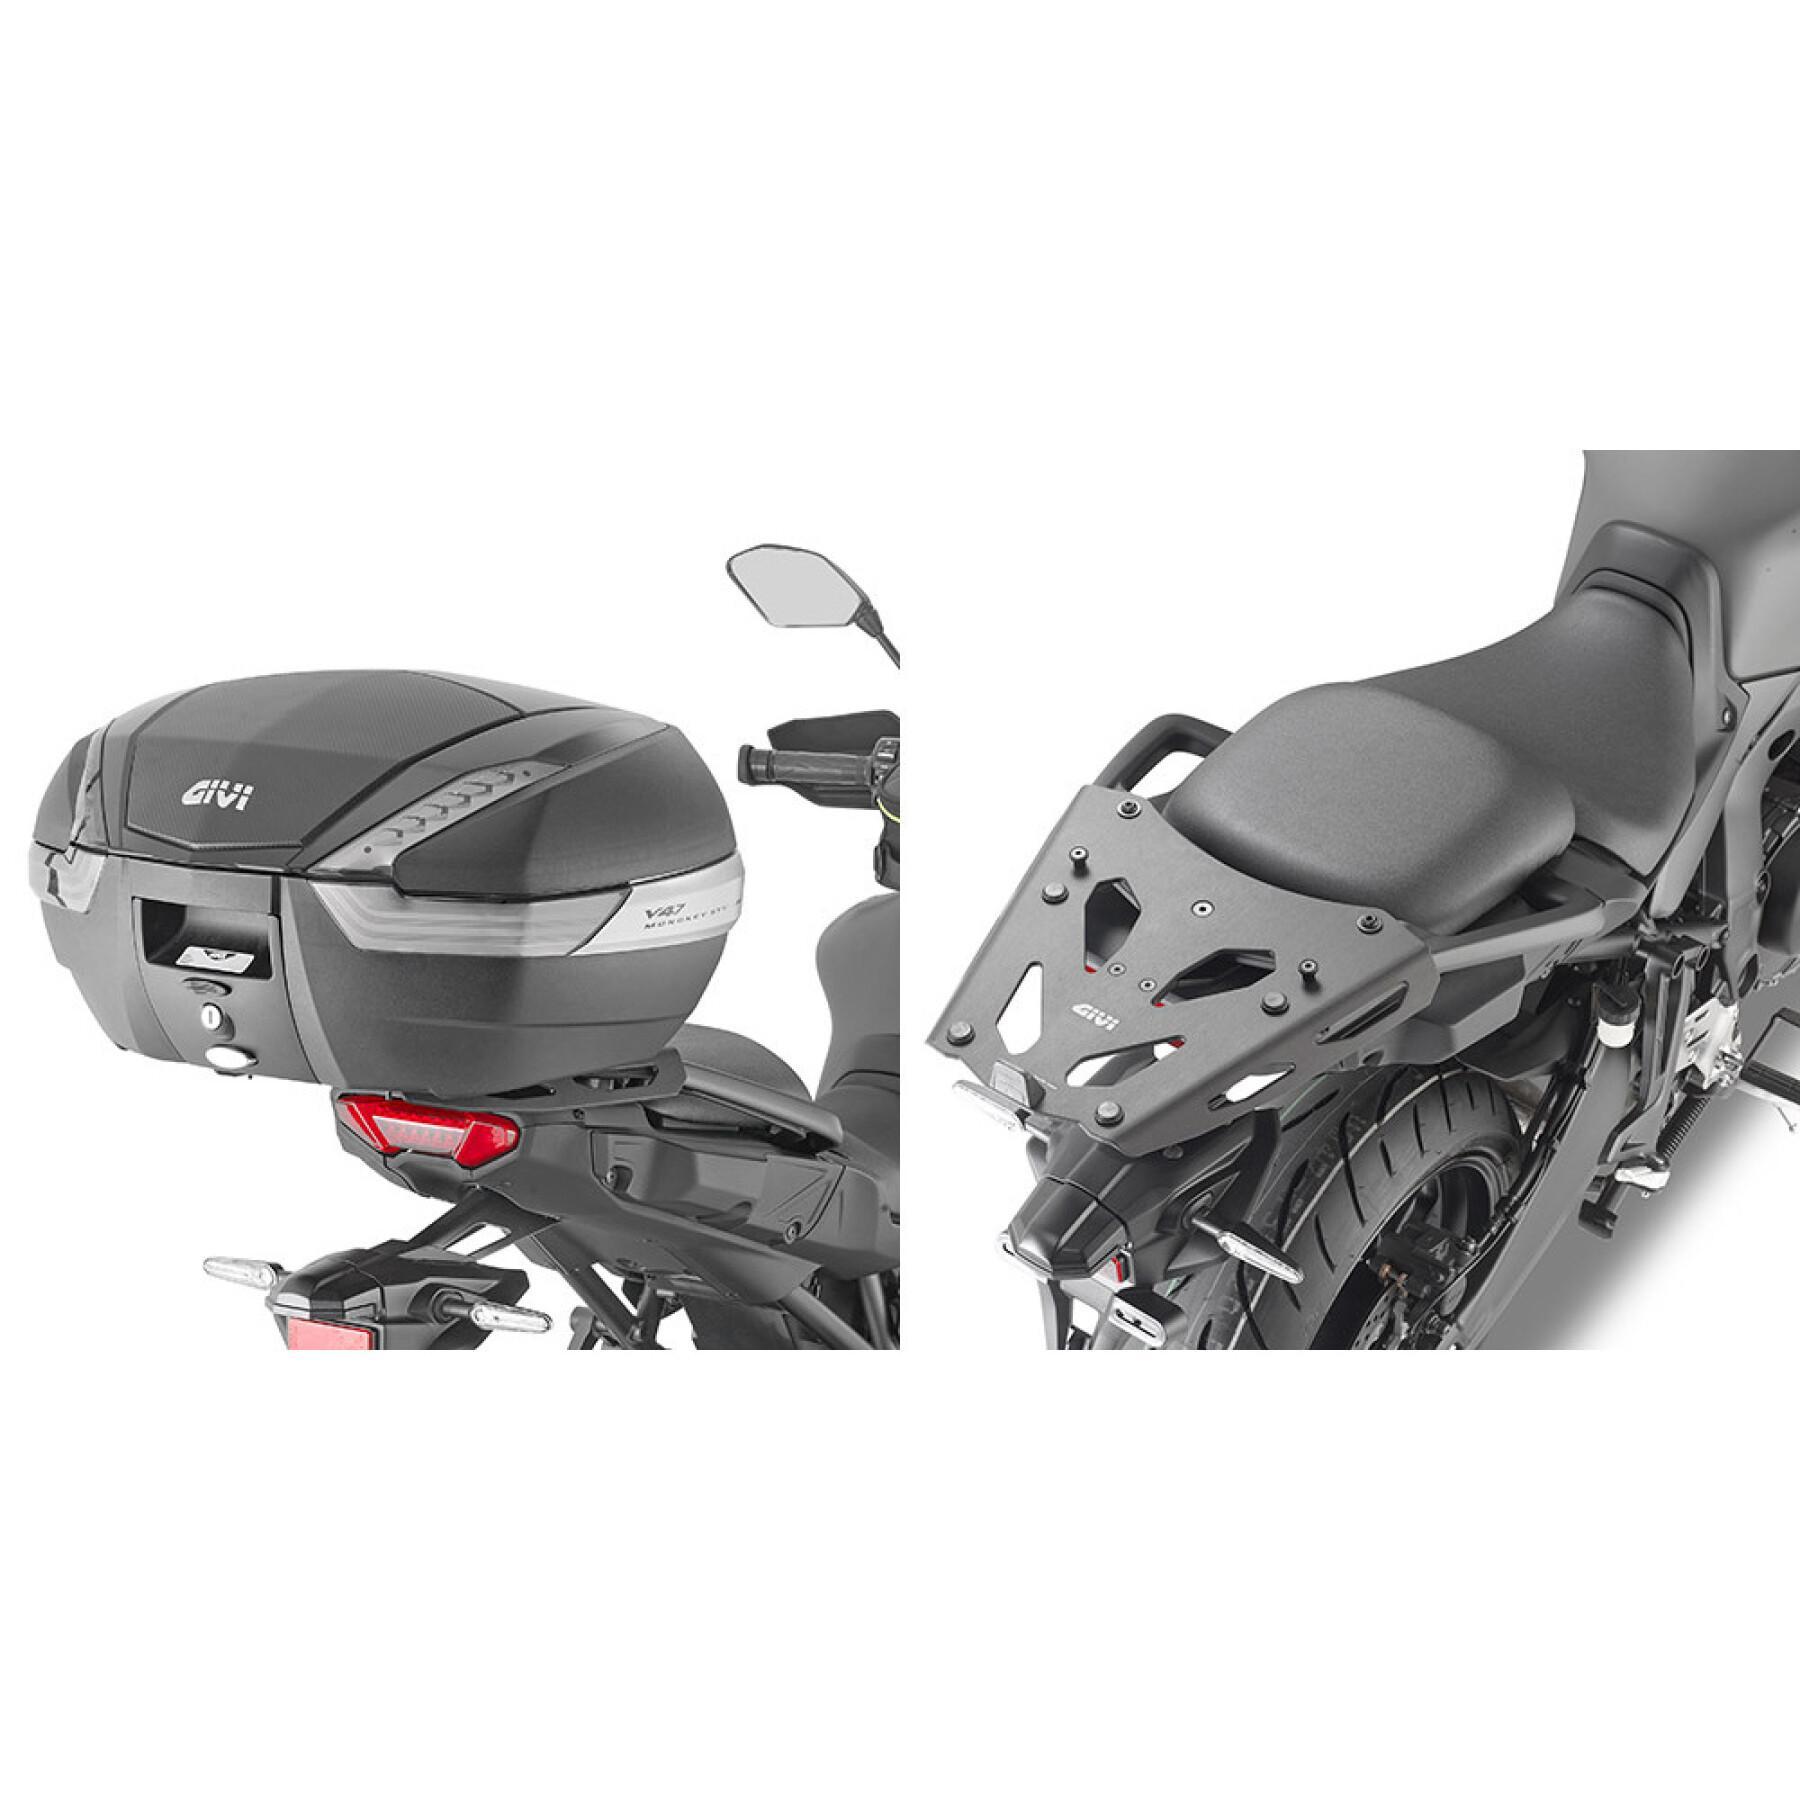 Halter Top Case Motorrad Aluminium Givi Yamaha Tracer 9/Tracer 9 GT (21)